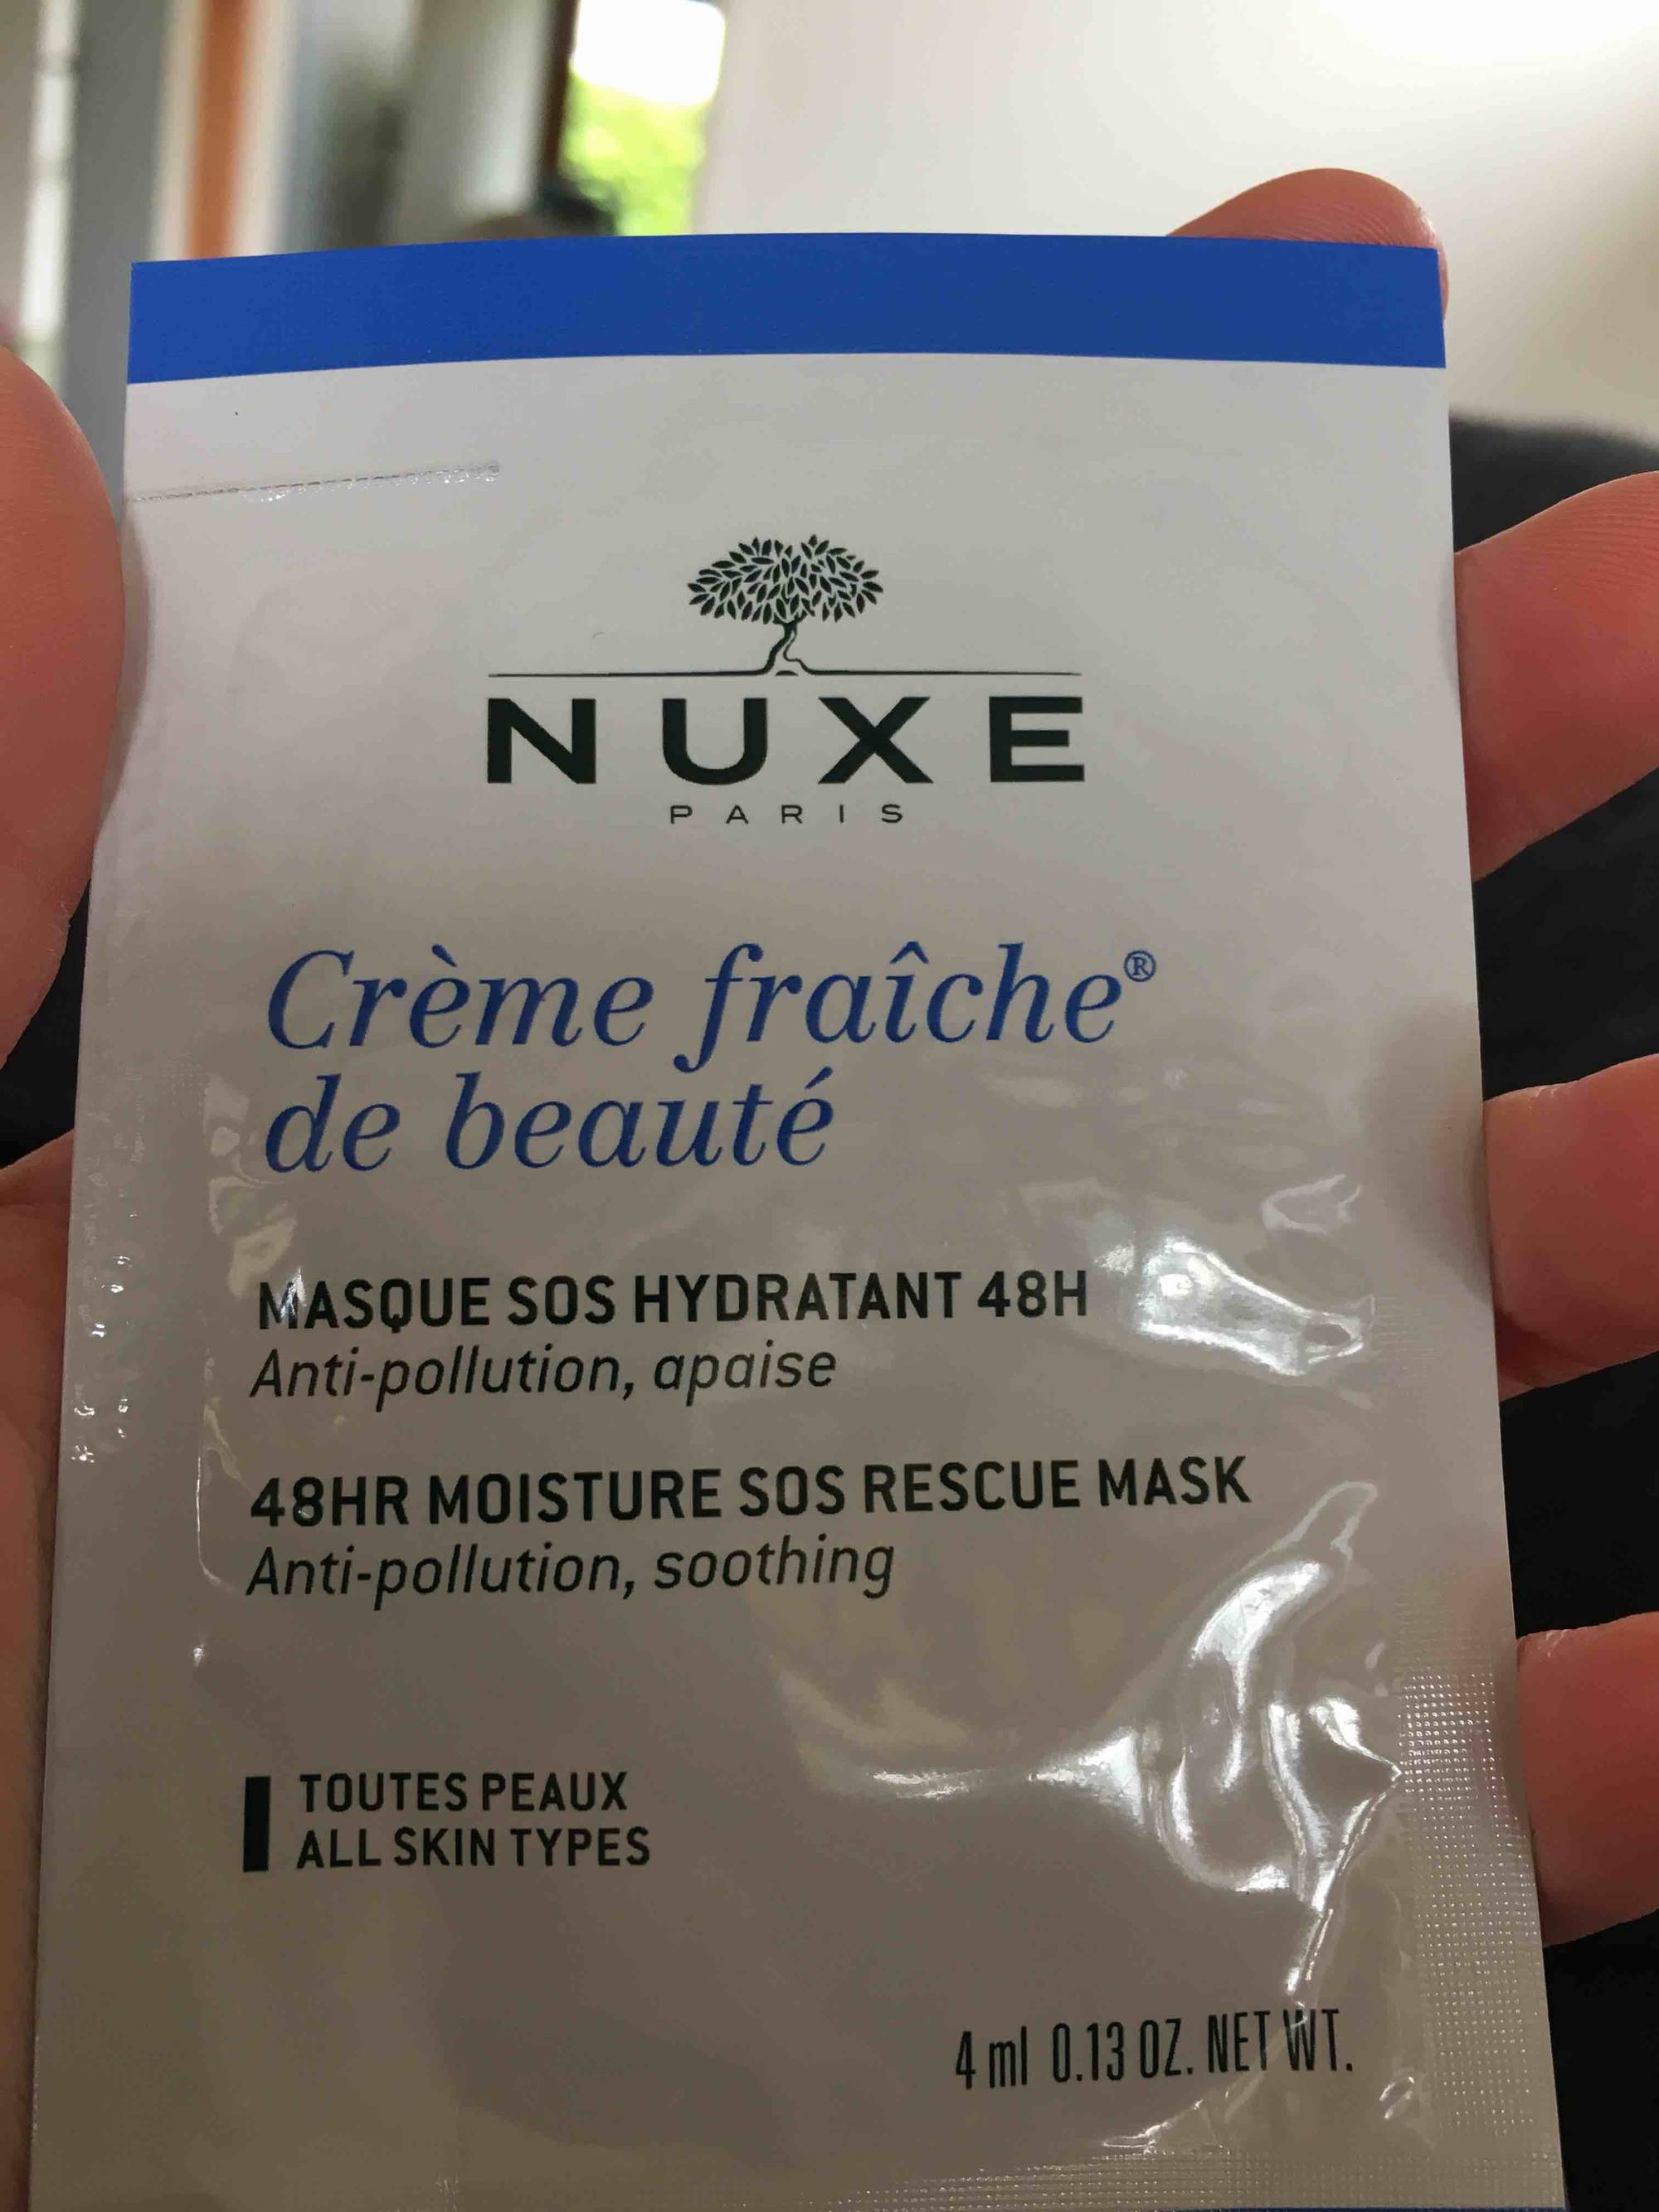 NUXE PARIS - Crème fraîche de beauté - Masque sos hydratant 48h